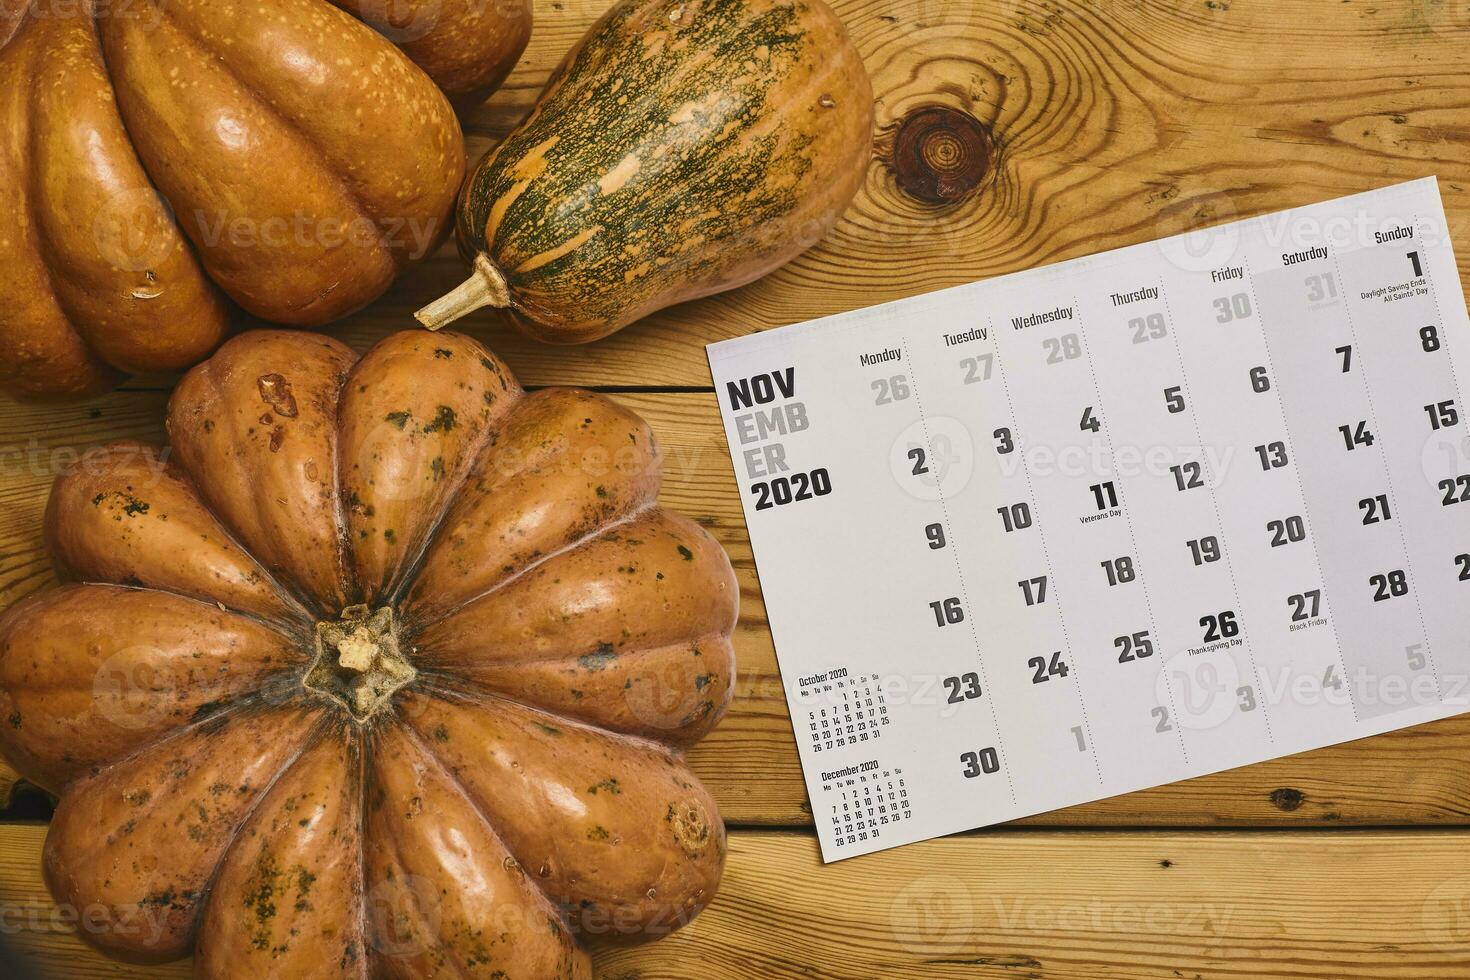 noviembre 2020 mensual calendario en madera foto